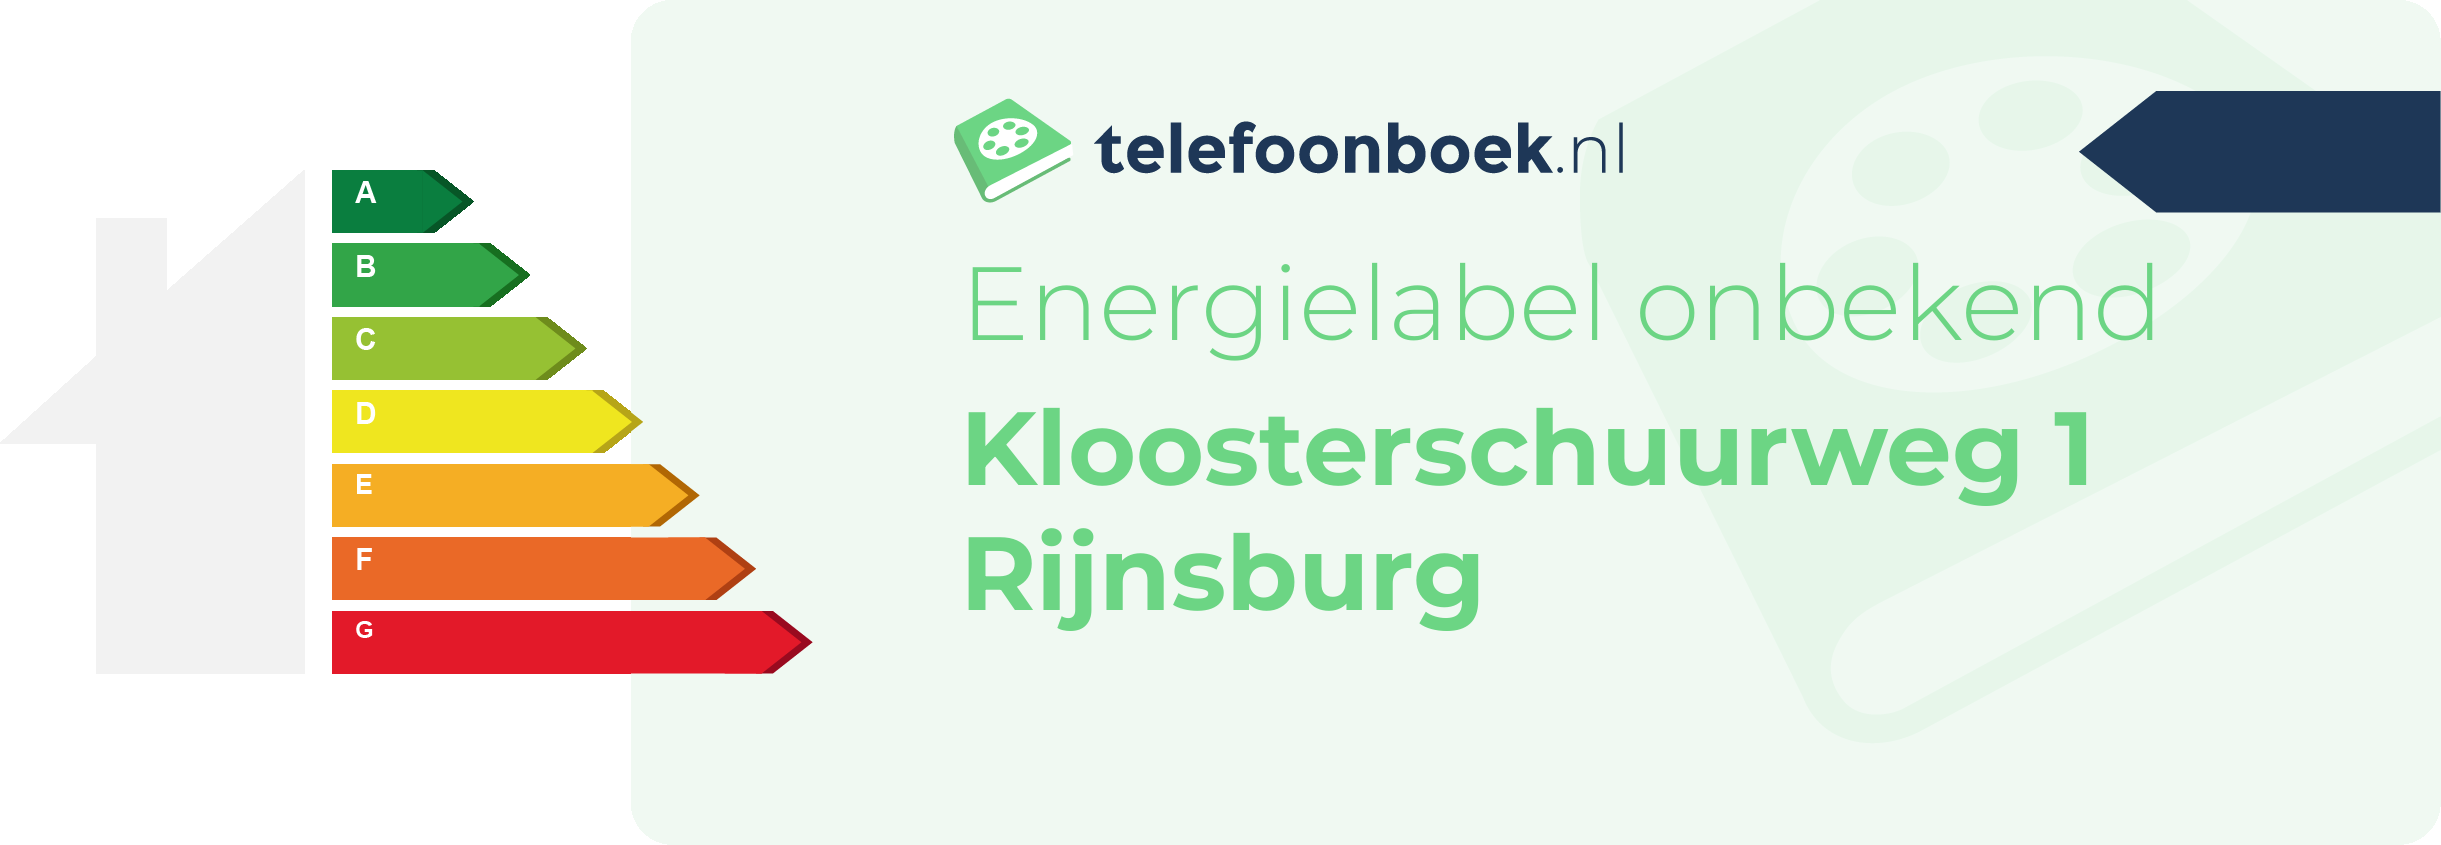 Energielabel Kloosterschuurweg 1 Rijnsburg